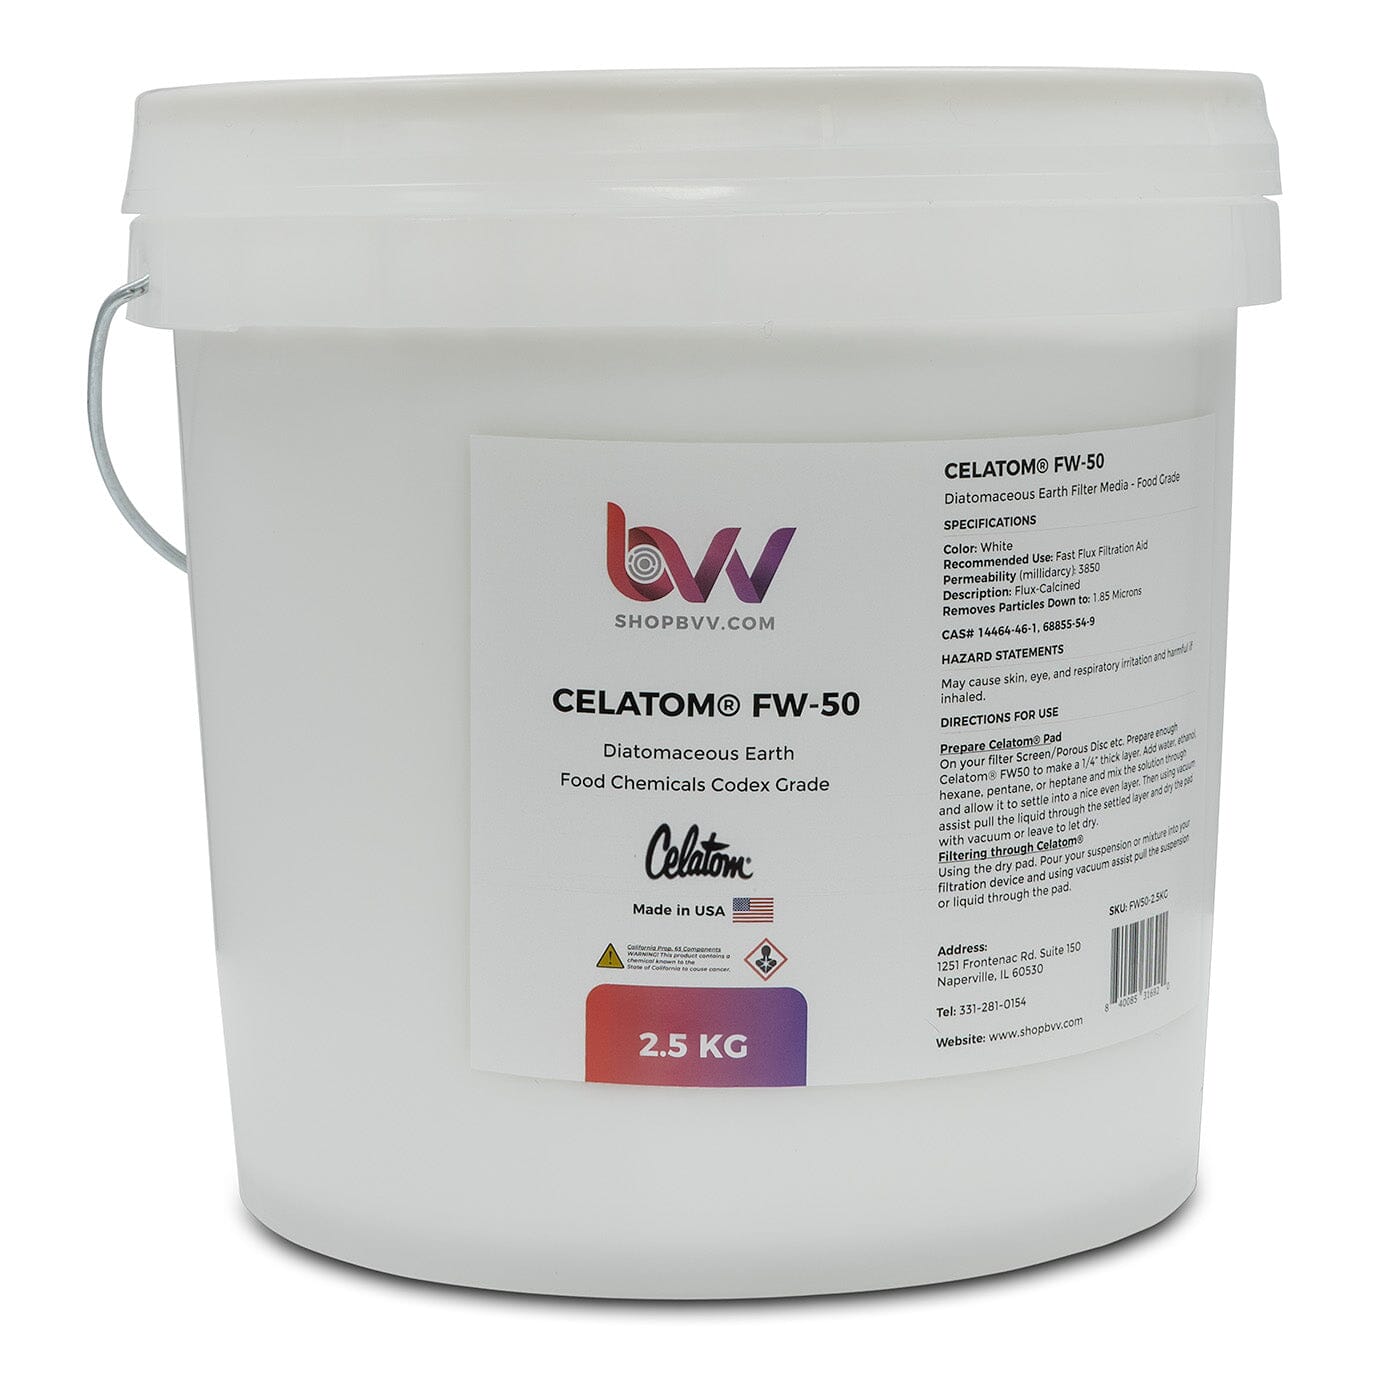 Celatom FW-50 Diatomaceous Earth 1.85 micron *Compare to Celite 545 Shop All Categories BVV 2.5KG 